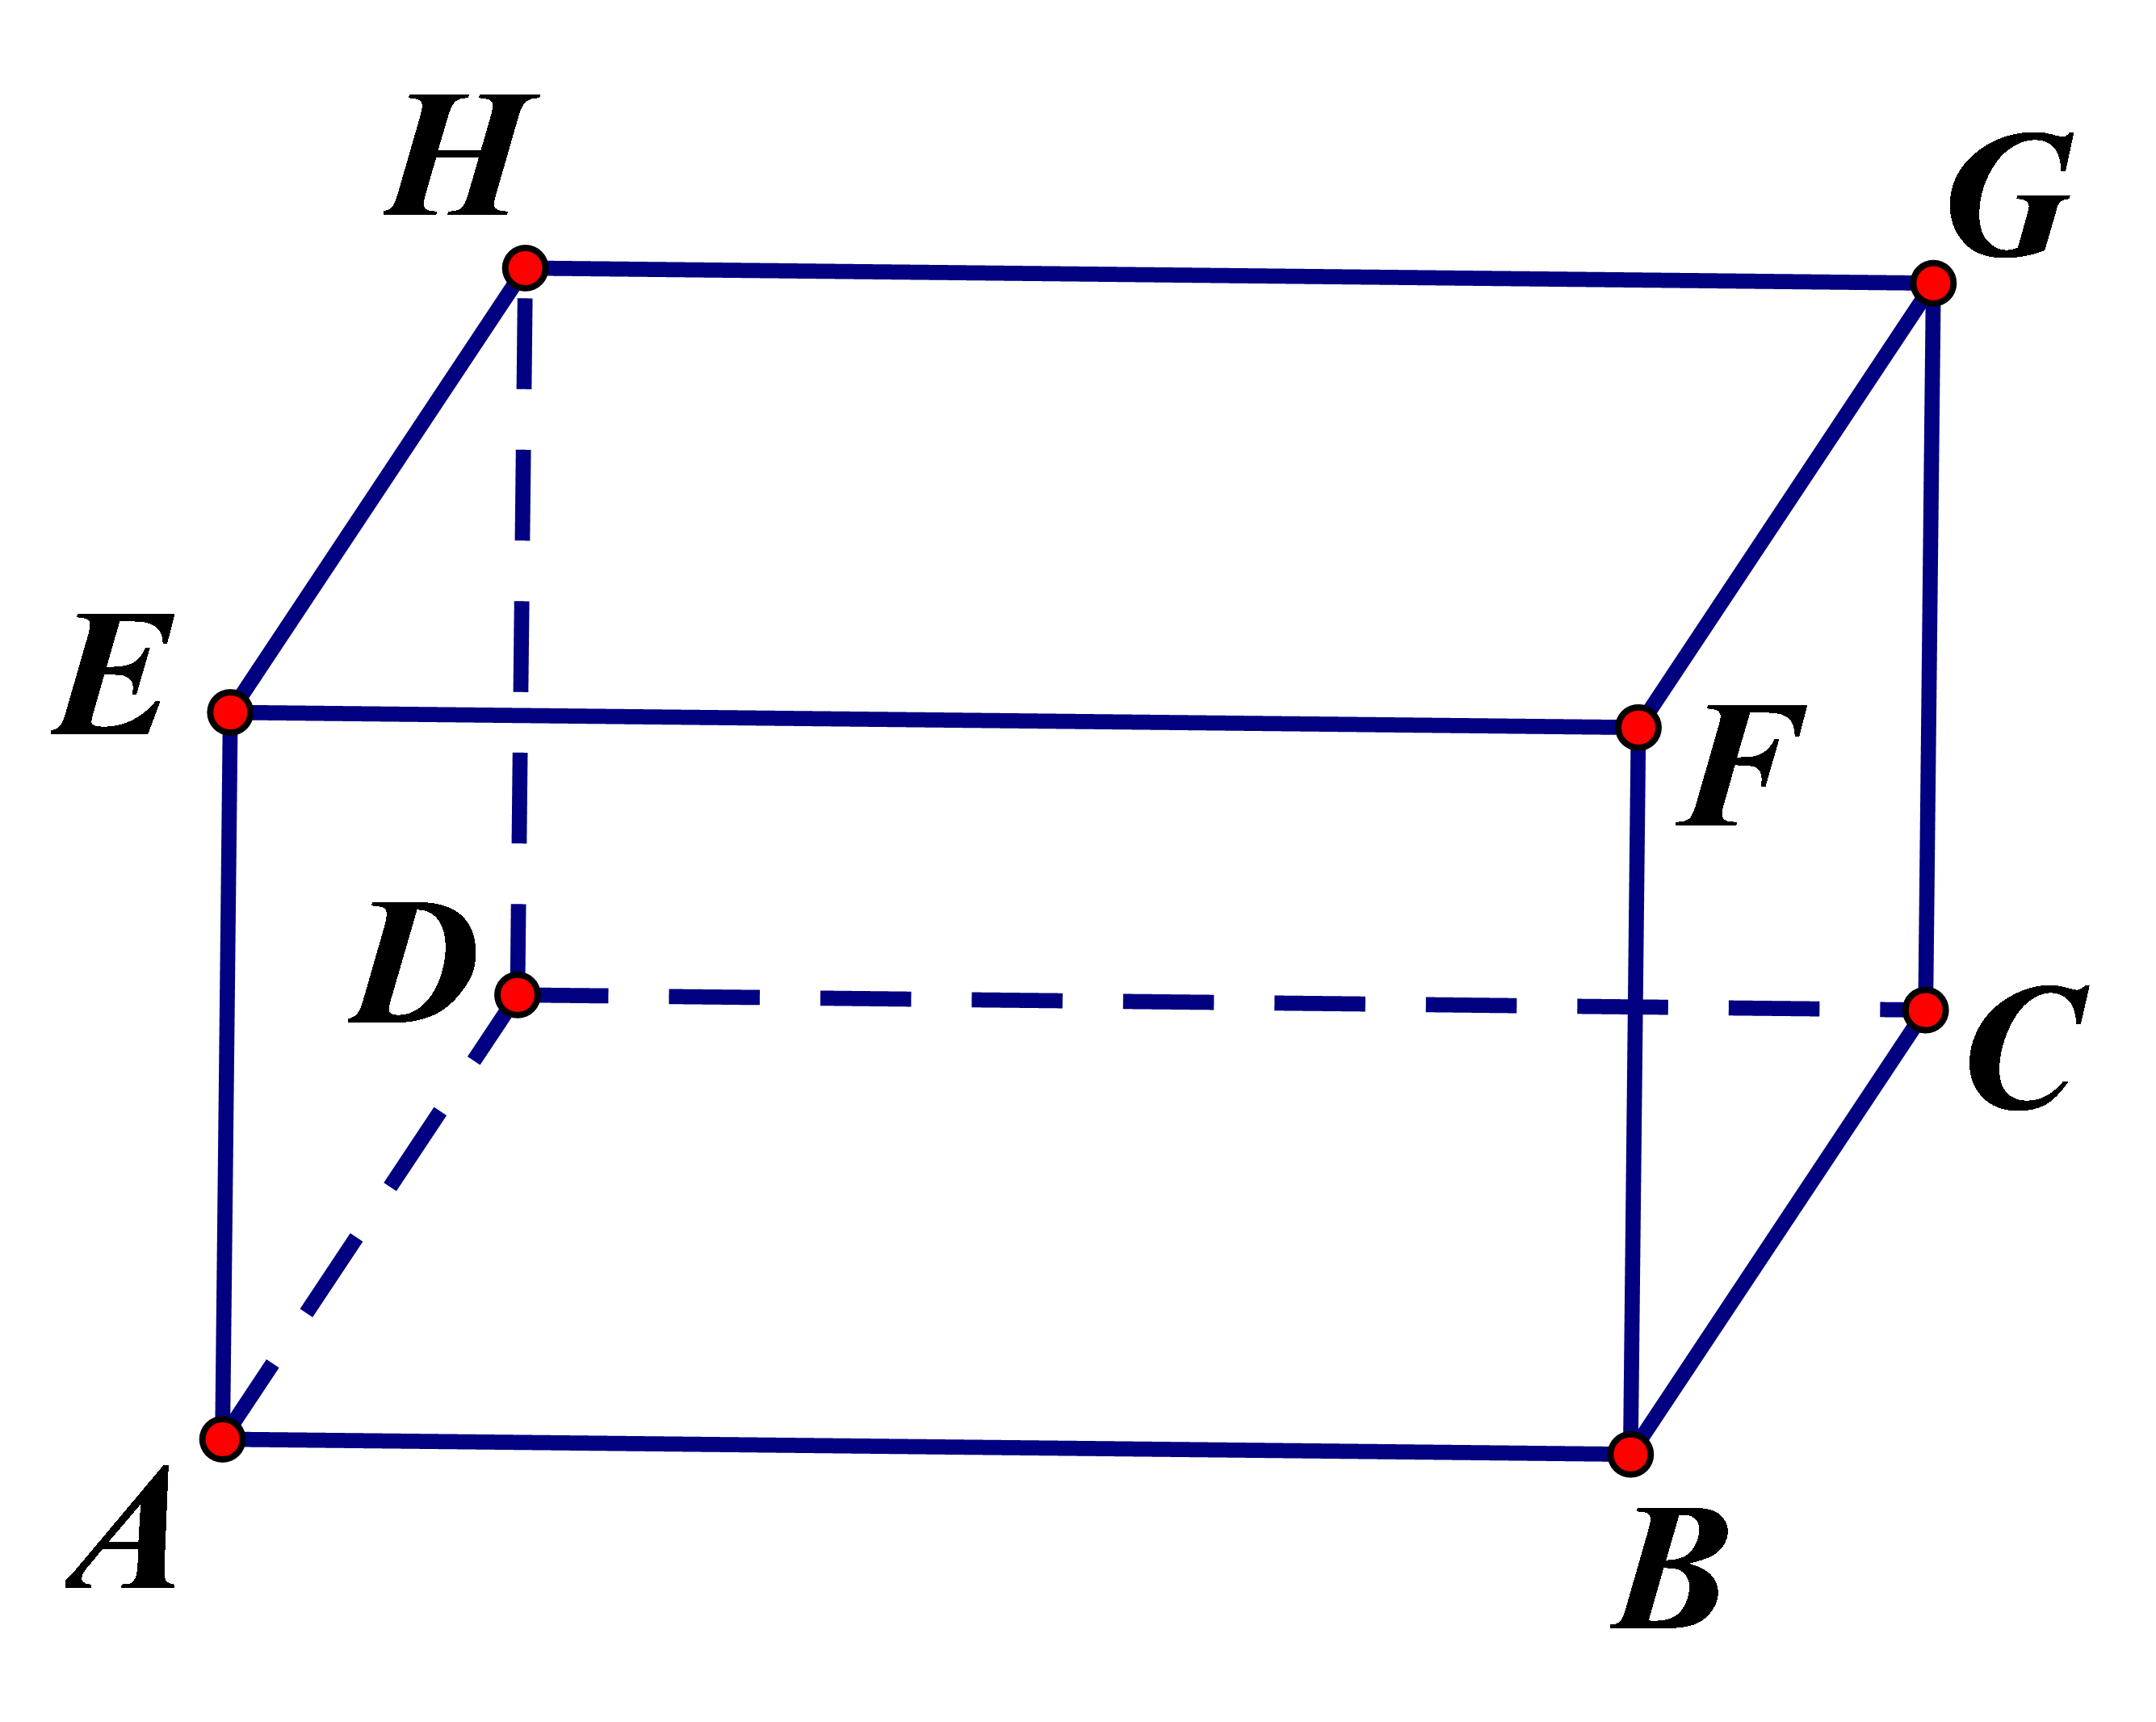 Quan sát hình vẽ. Cho biết: a)	Các cặp mặt phẳng song song với nhau b)	Các cặp mặt phẳng nào vuông góc với nhau c) Cho HG=6cm, GC=3cm, CB=4cm  Tính diện tích toàn phần hình hộp chữ nhật trên. (ảnh 1)